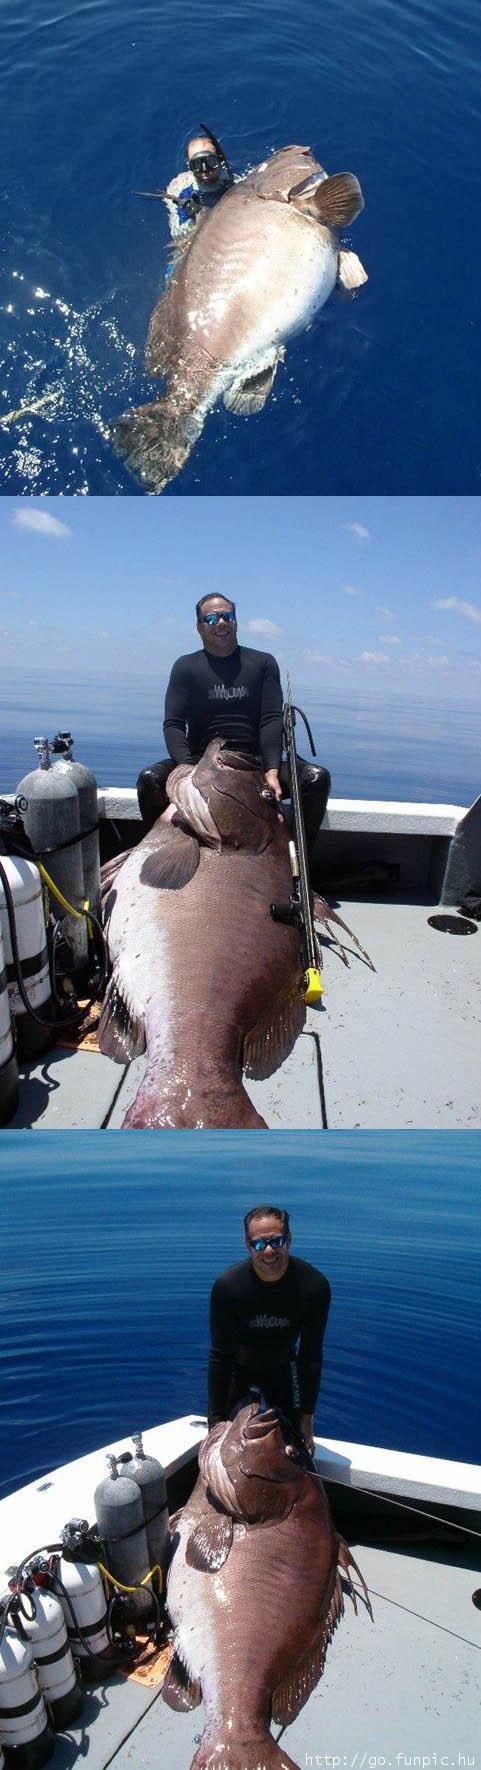 Big Fish.jpg